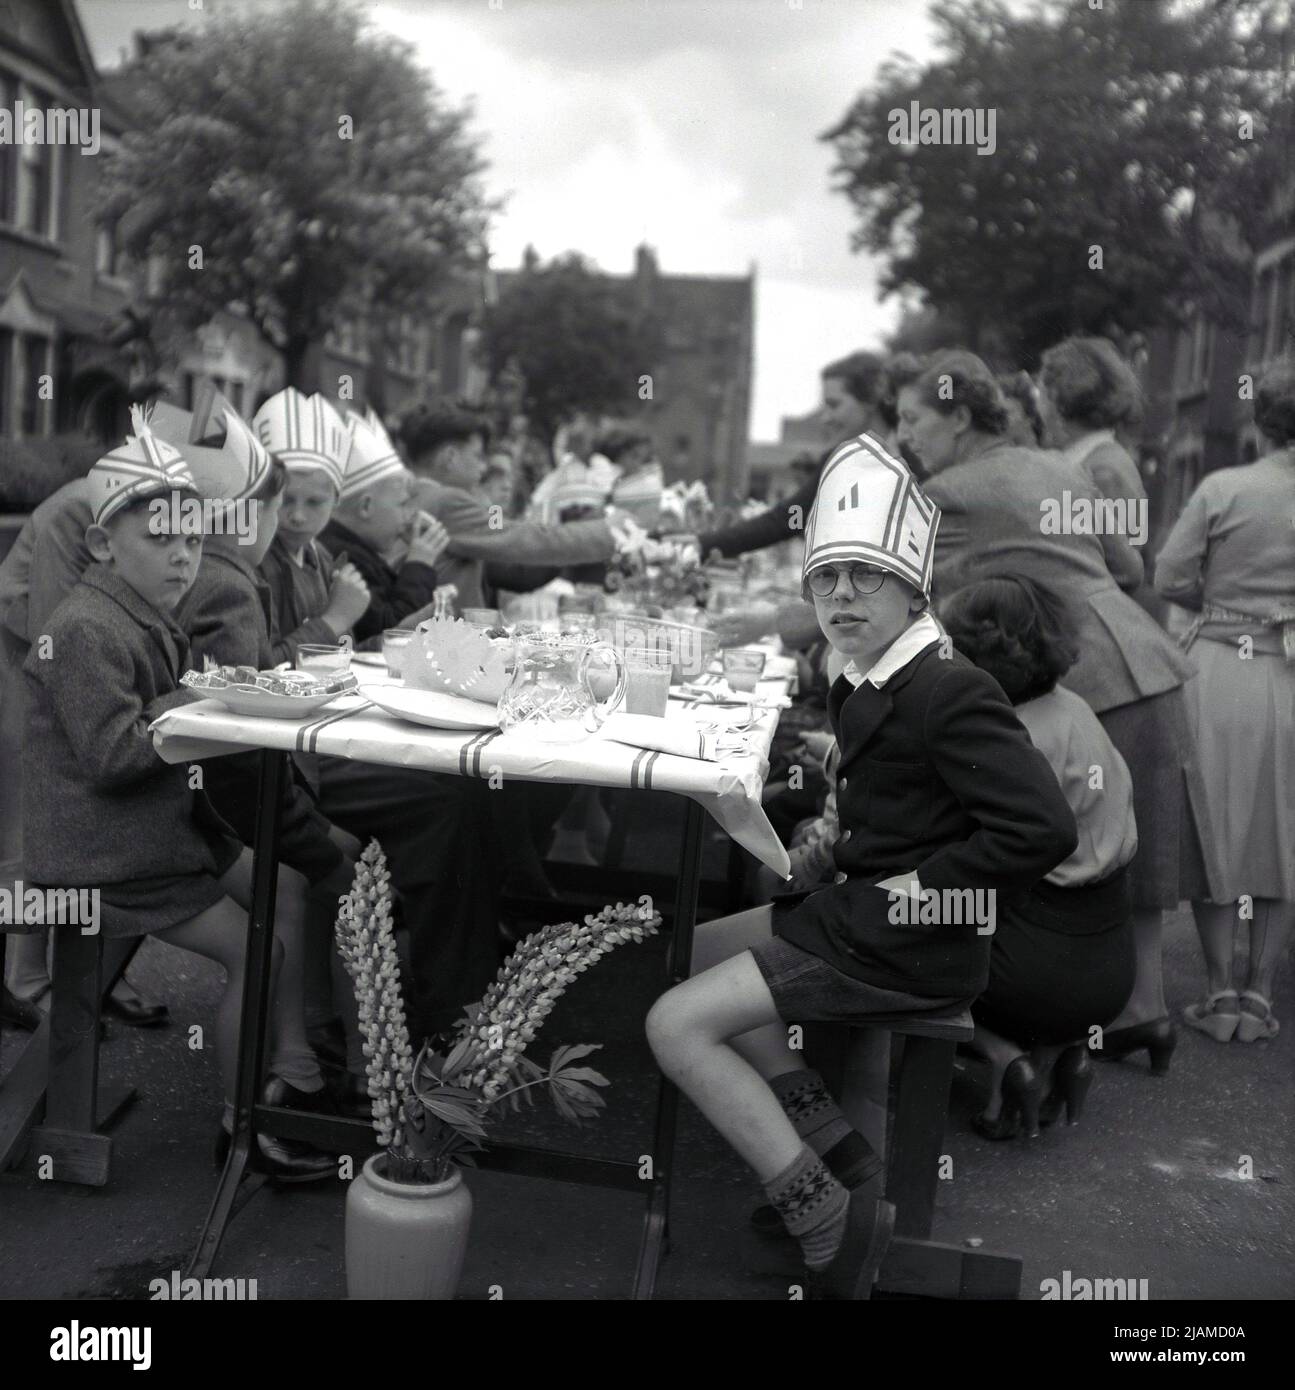 1953, historische Straßenparty zur Krönung von Königin Elizabeth II. Auf den Thron, eine Gruppe von Menschen, die an einem Tisch in einer Straße sitzen, mit jungen Jungen am Ende des Tisches, die Hüte tragen, einige mit dem Buchstaben E auf, England, Großbritannien. Stockfoto